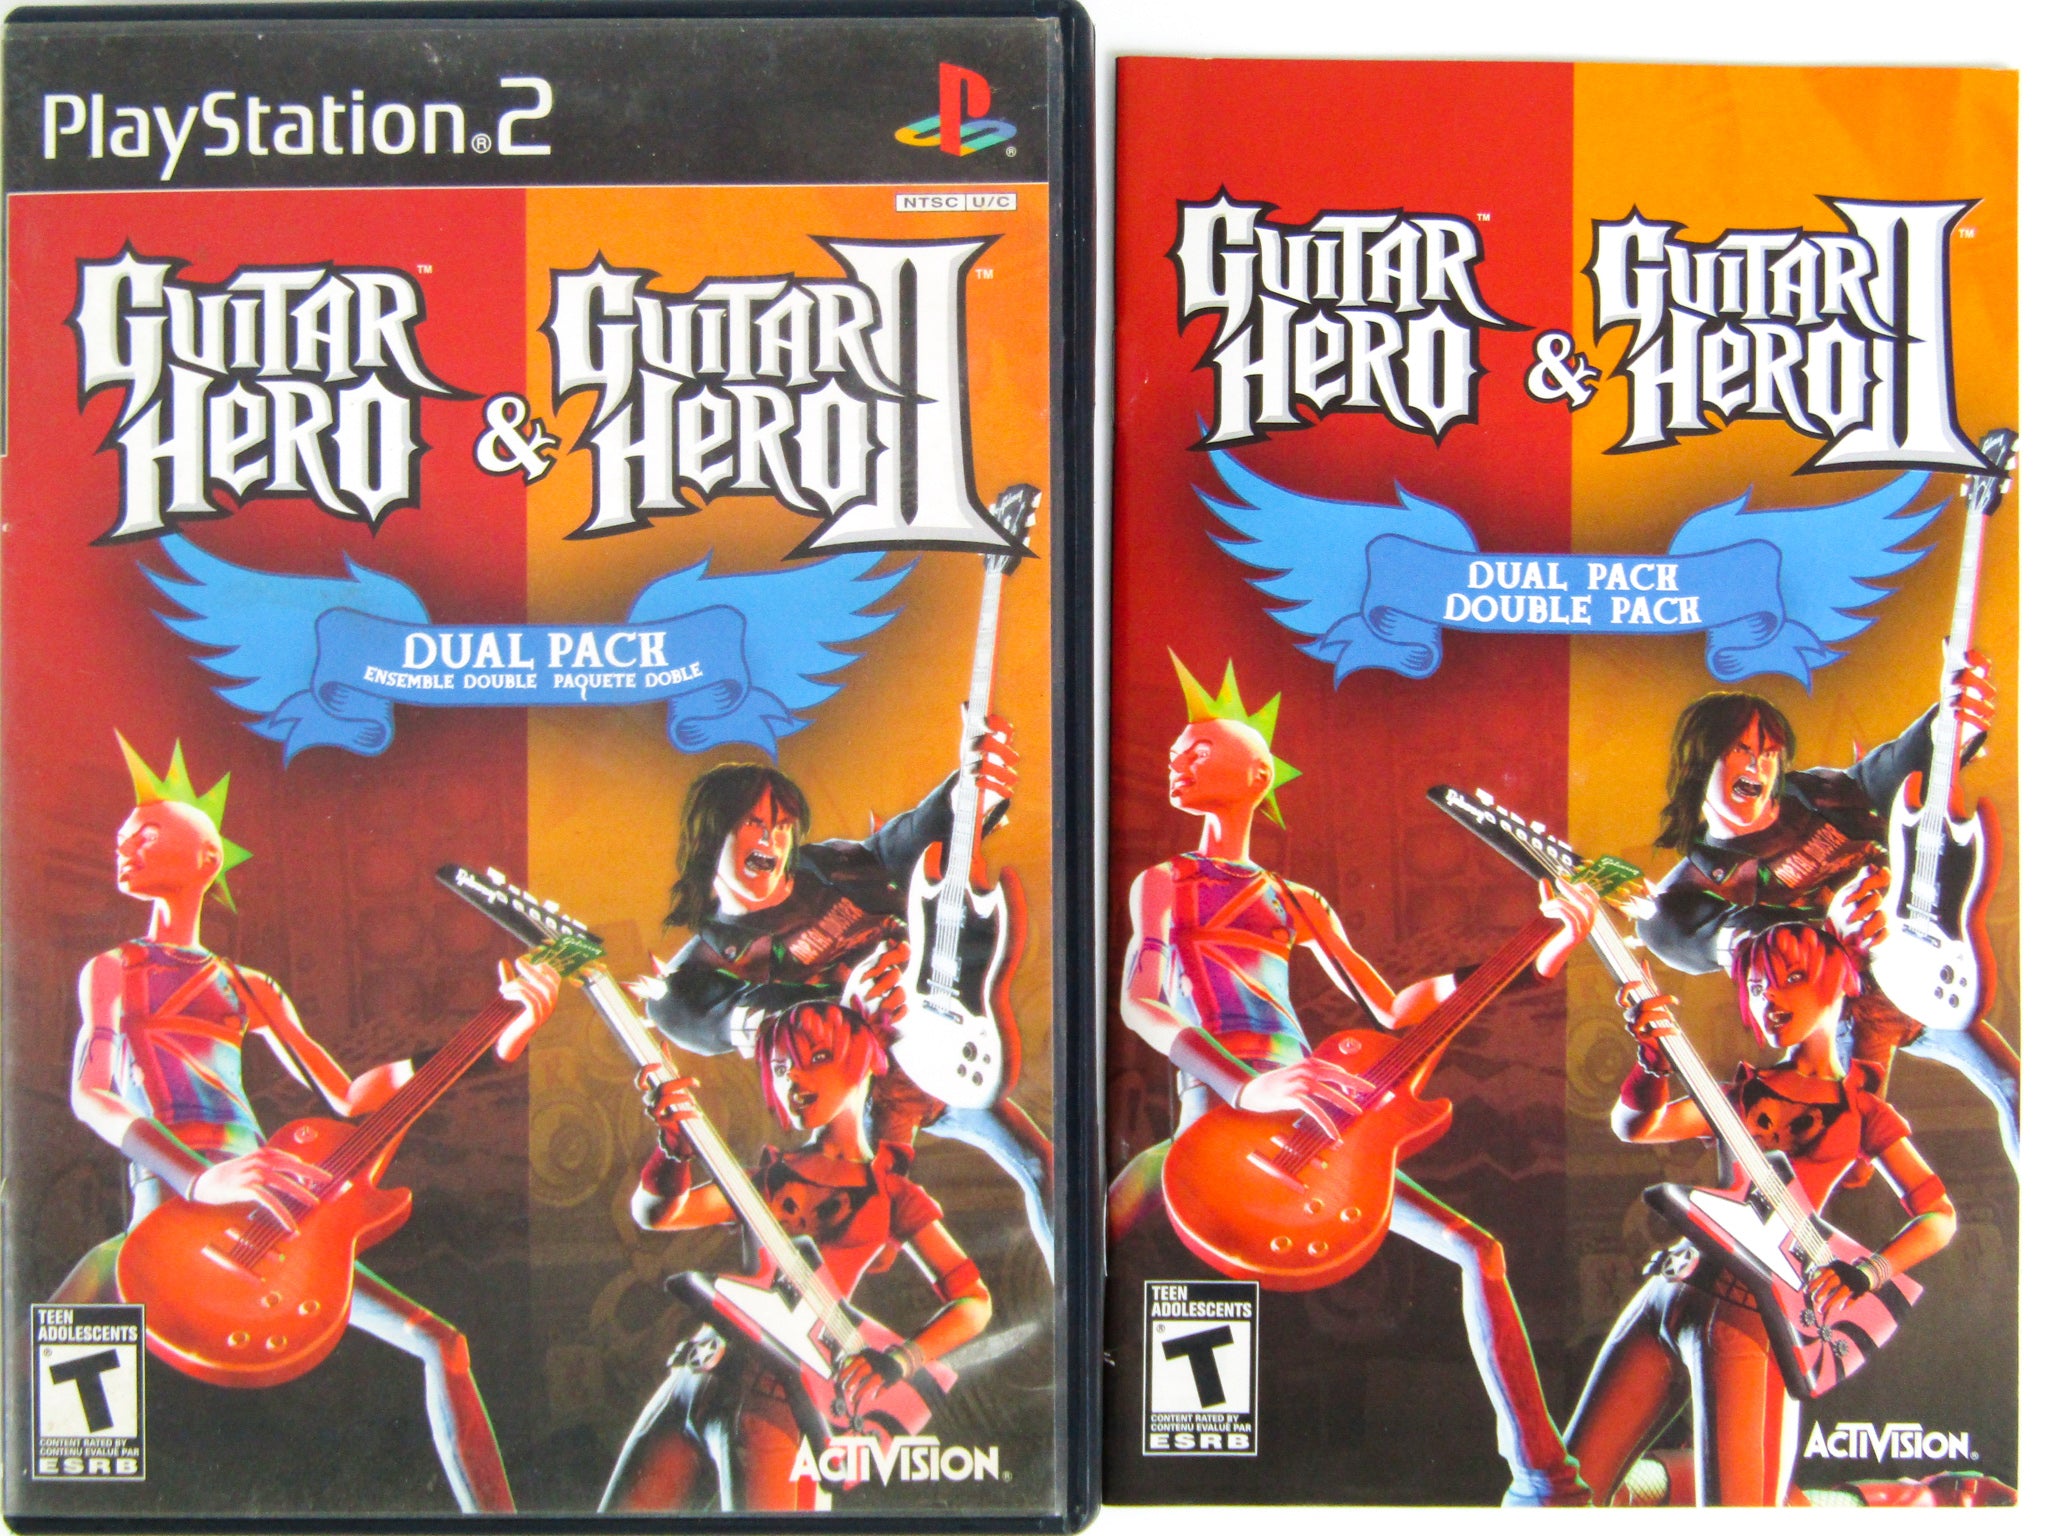 Guitar Hero & Guitar Hero II Dual Pack, WikiHero